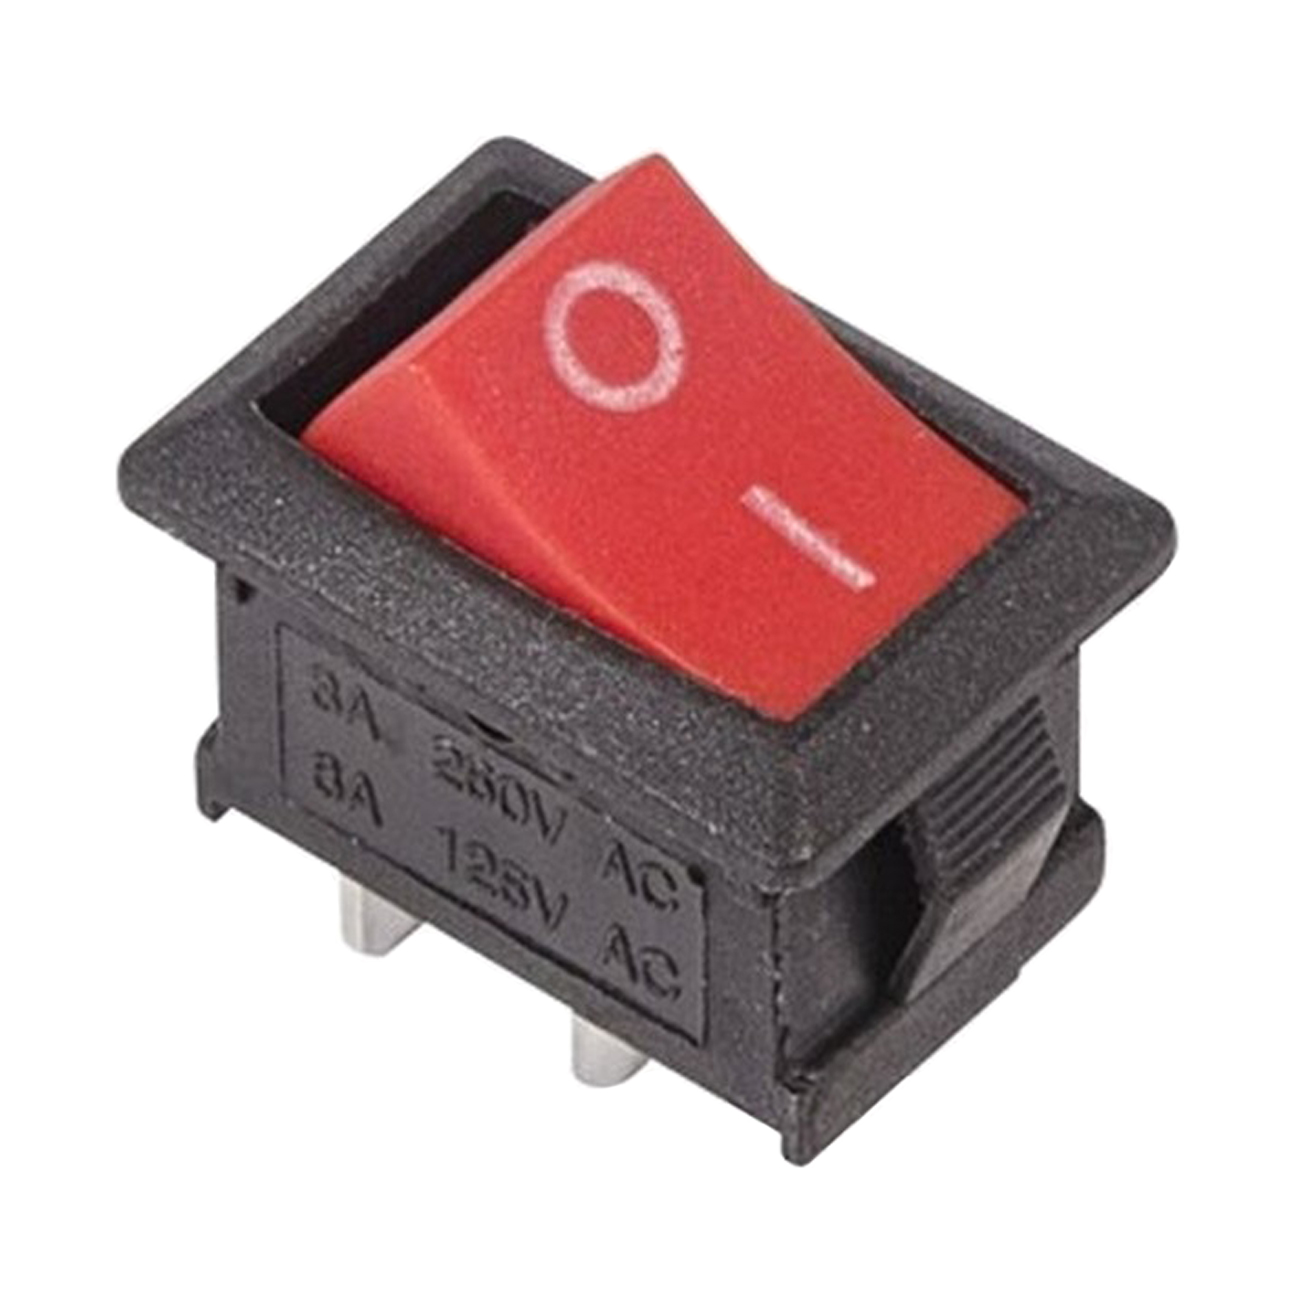 Где можно купить выключатель. Выключатель клавишный 250v 3а (2с) on-off красный Micro (RWB-101) Rexant. Выключатель клавишный 250v 6а 2с on-off красный Mini Rexant 36-2051. Выключатель клавишный Rexant 250в 6а 2с on-off красный 36-2111 RWB-201. Выключатель клавишный 250v 3а (3с) on-on красный Micro Rexant.